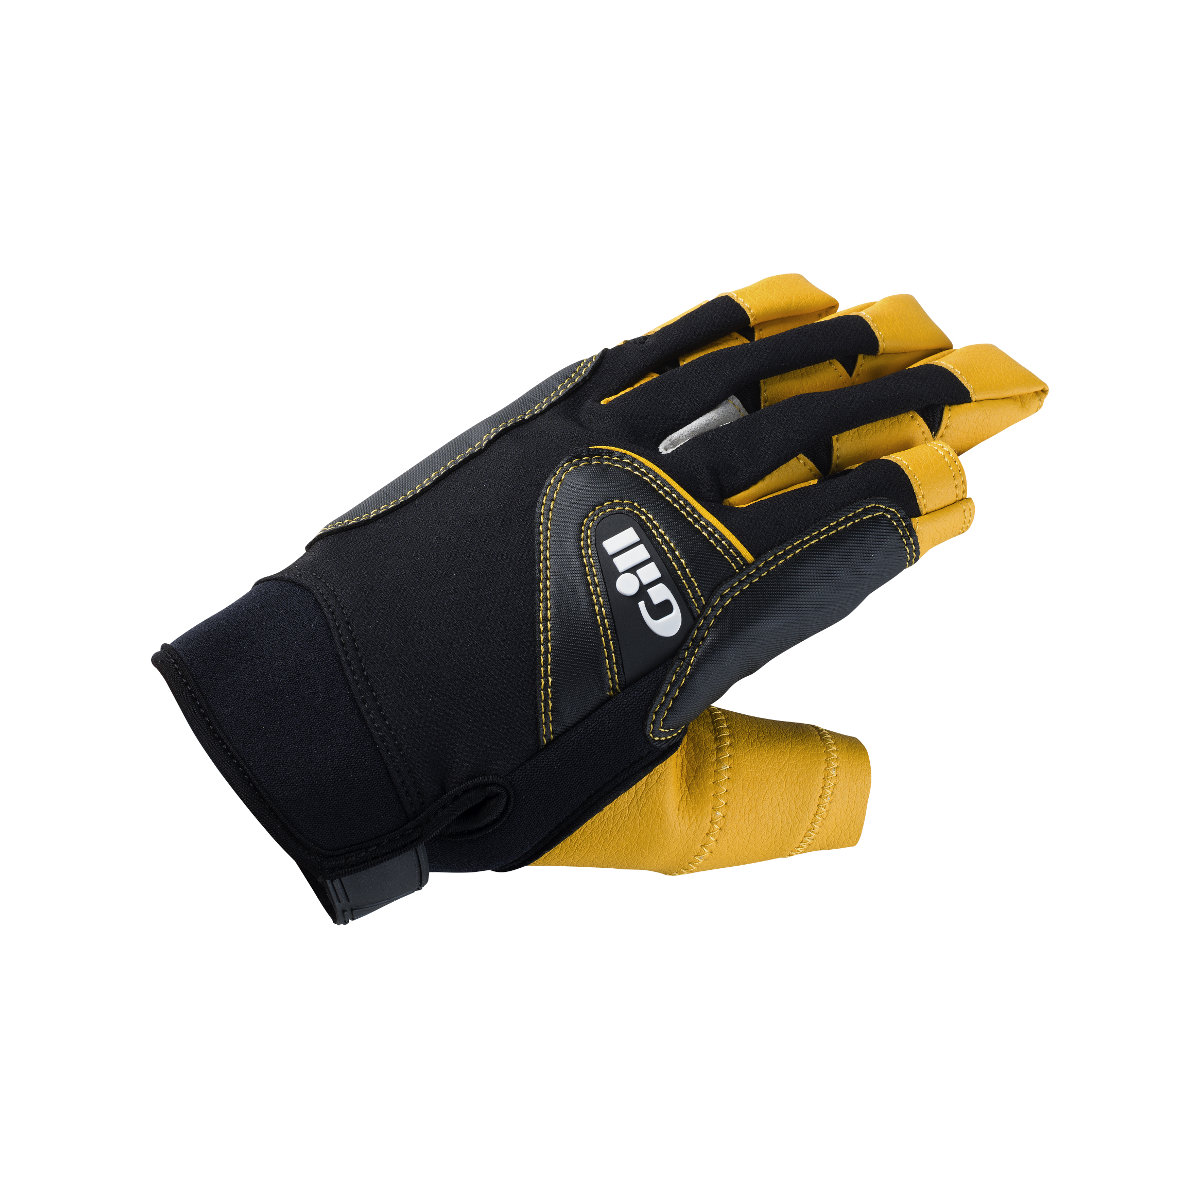 Gill Pro gants de voile à doigts longs - noir/jaune, taille XS